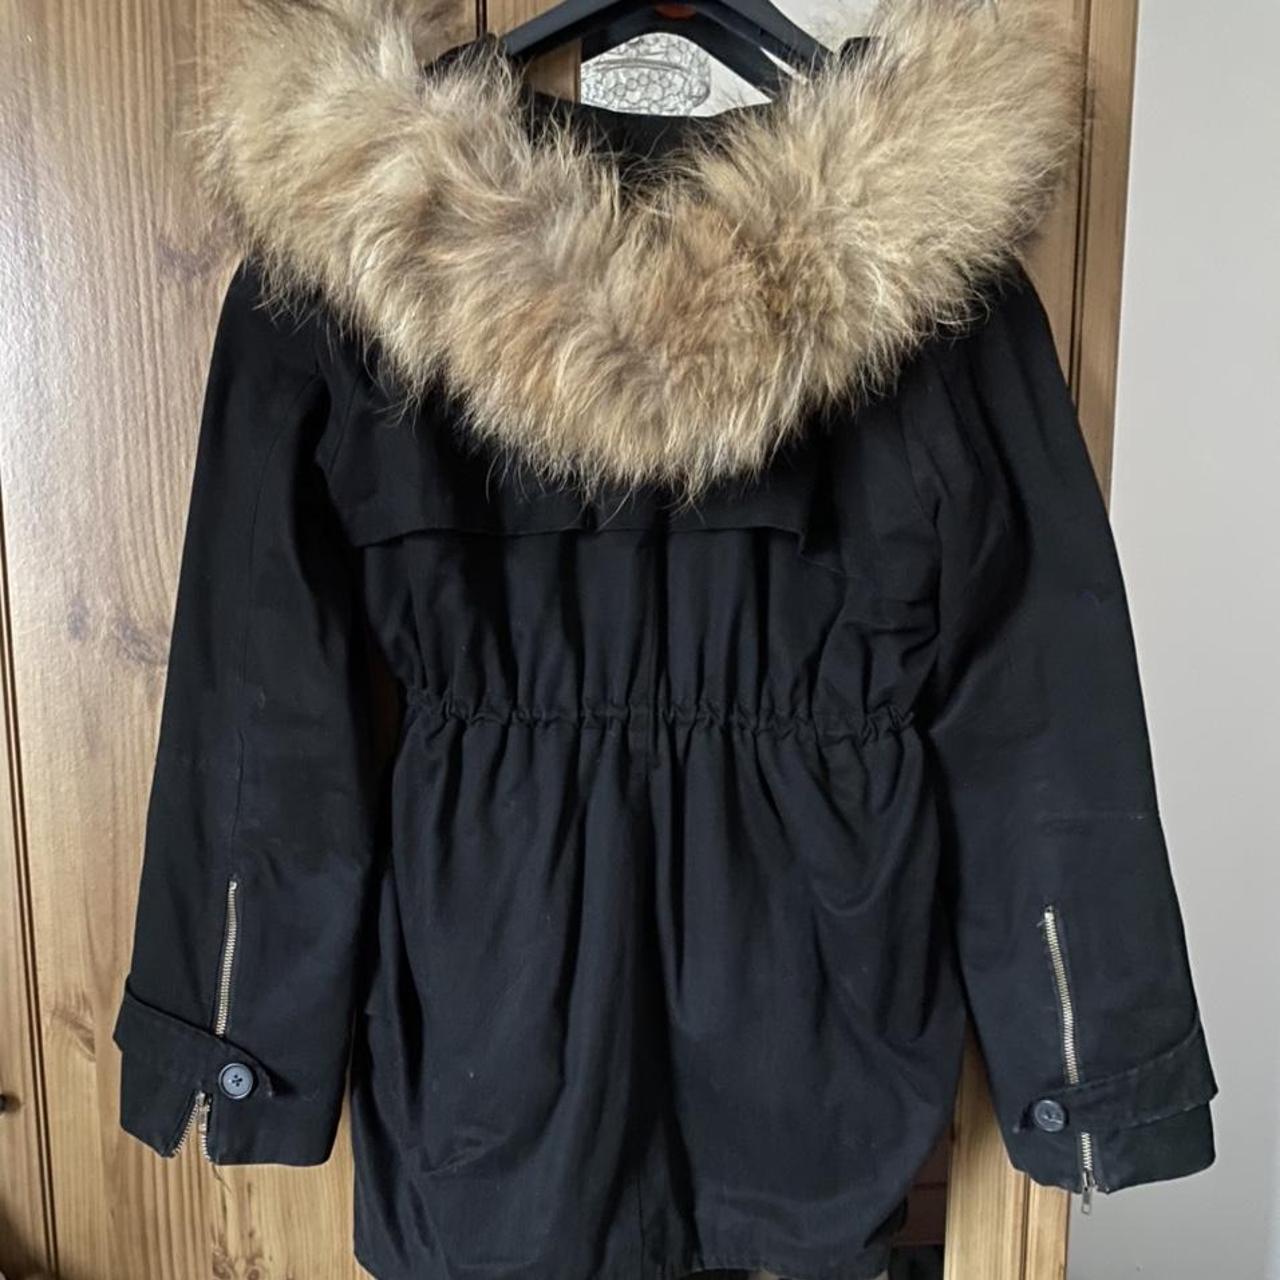 Sherpa lined black Parker coat with real fur hood.... - Depop